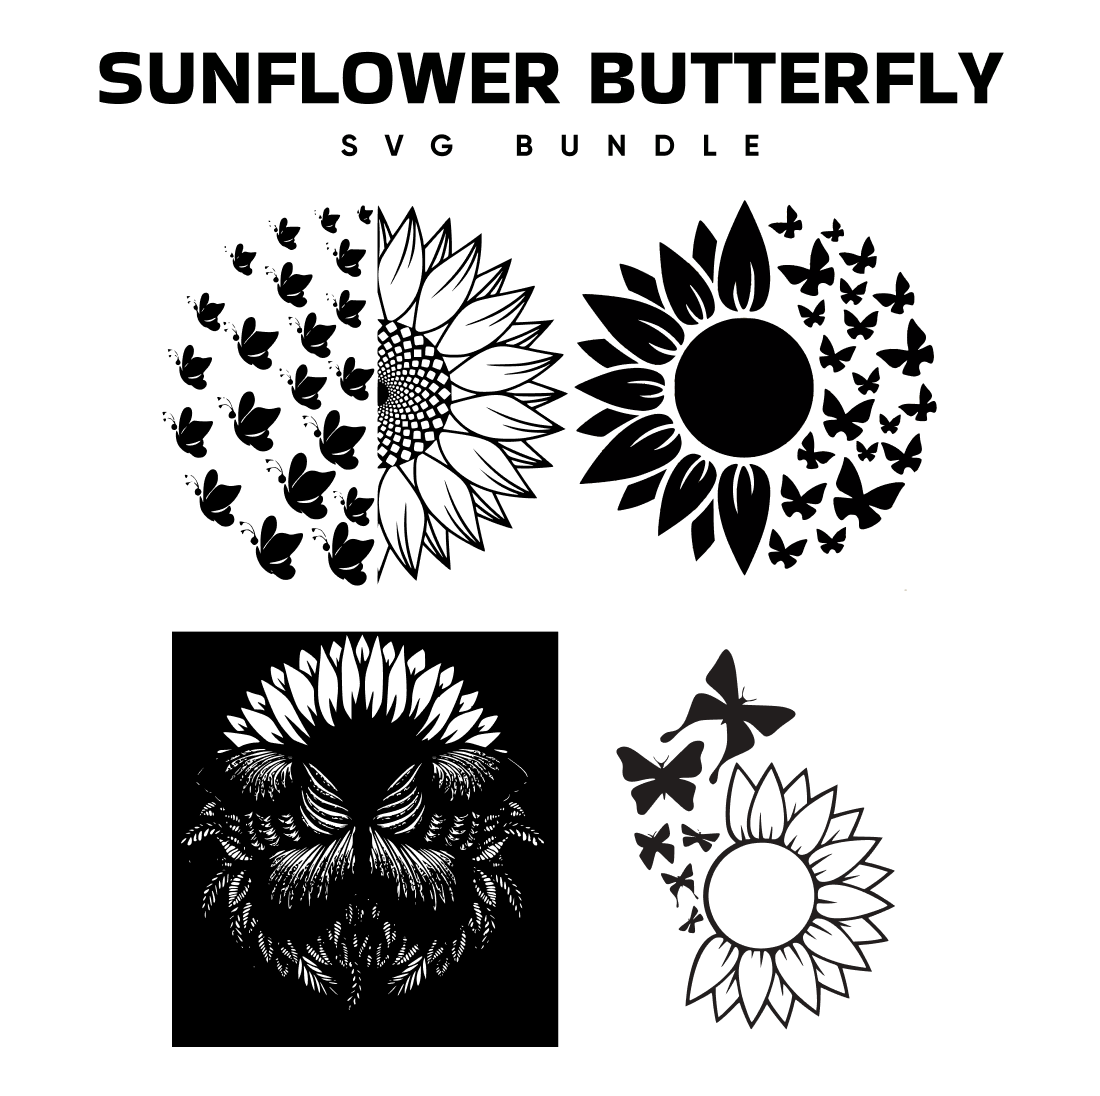 Sunflower Butterfly SVG.